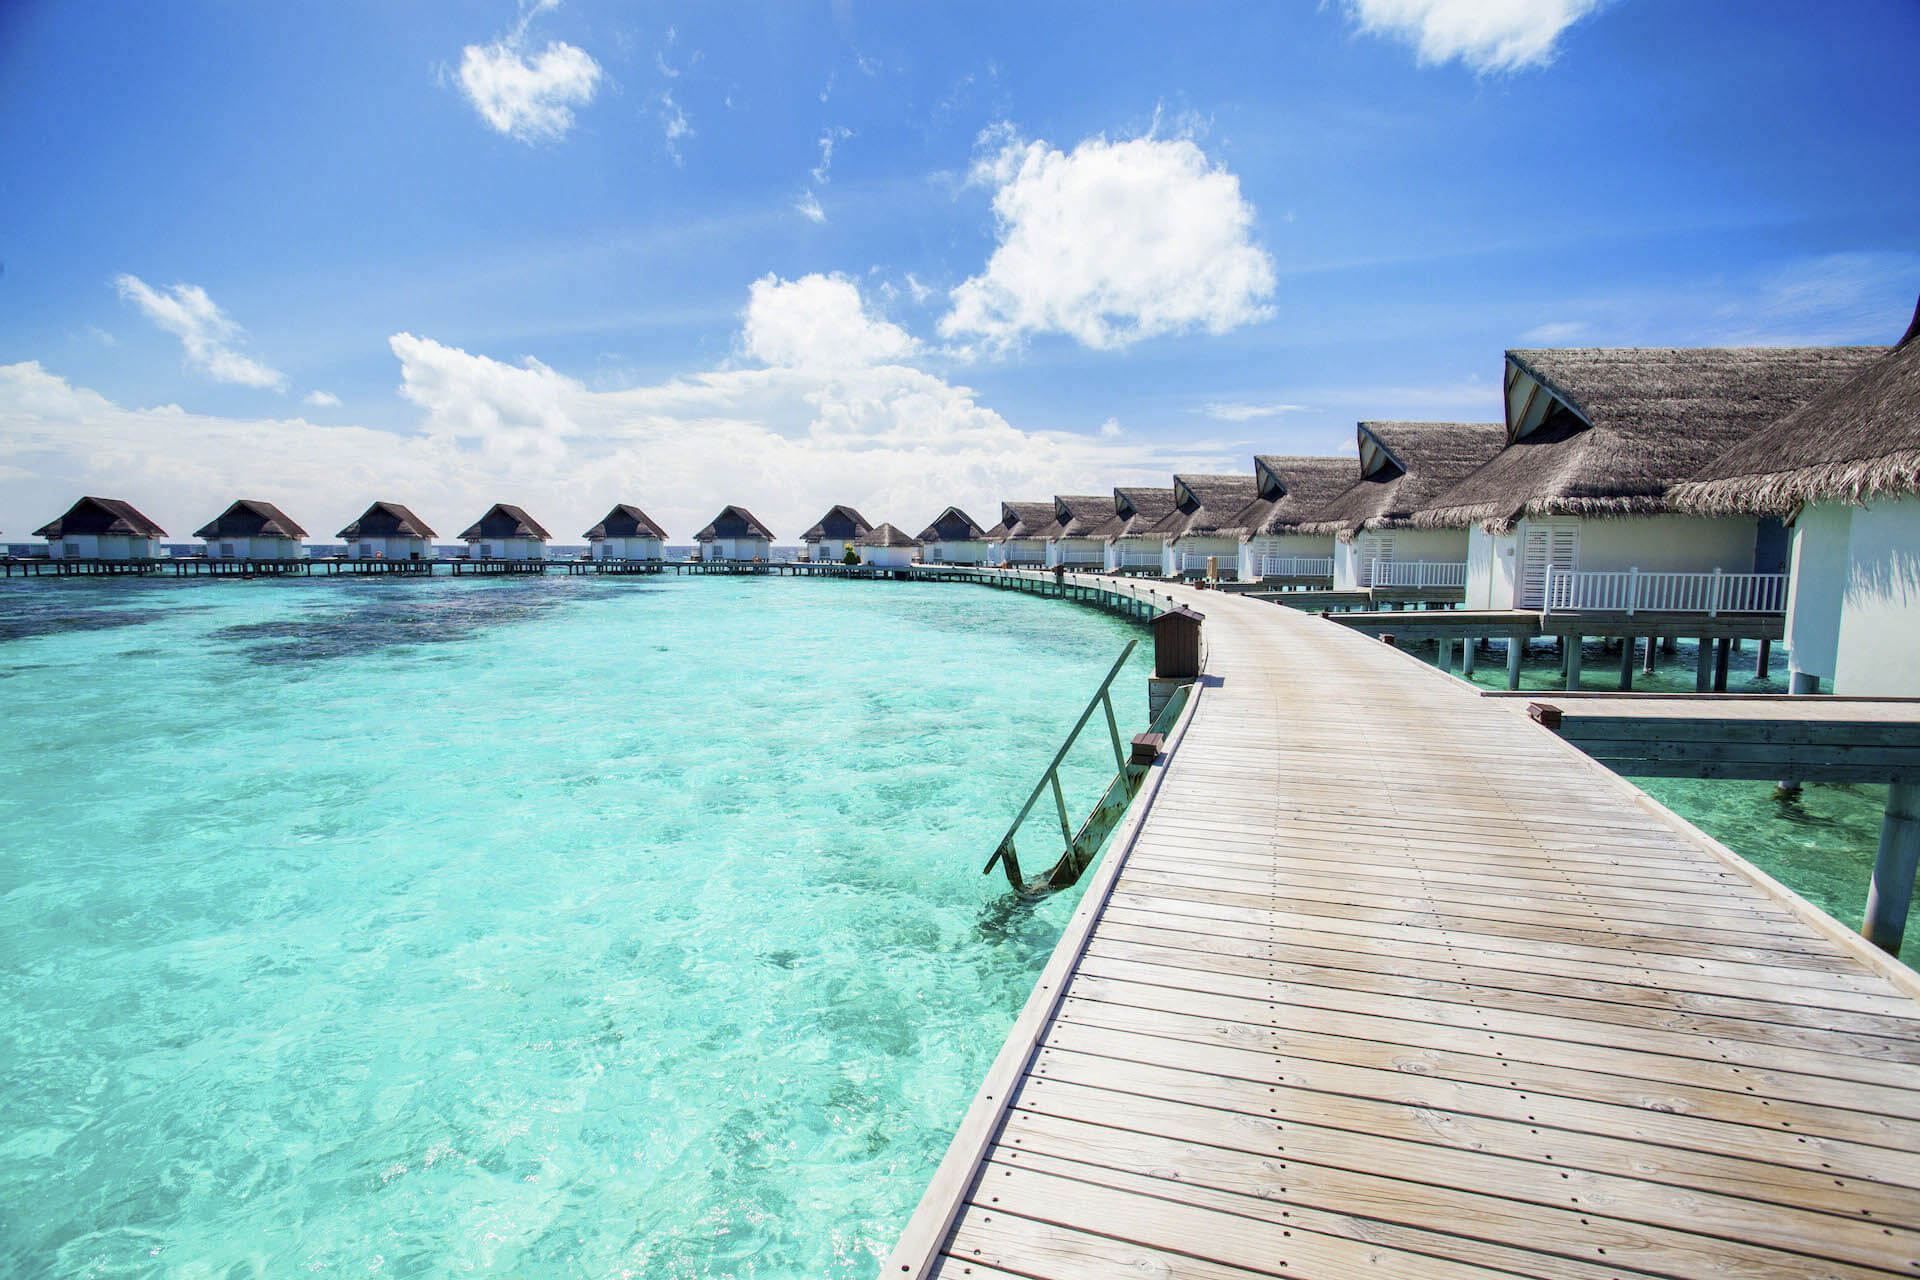 Island resort spa мальдивы. Мальдивы Сан Исланд Резорт спа. Отель Sun Island Resort Spa 5 Мальдивы. Мальдивы Centara Grand Island. Остров Налагурайду Мальдивы.